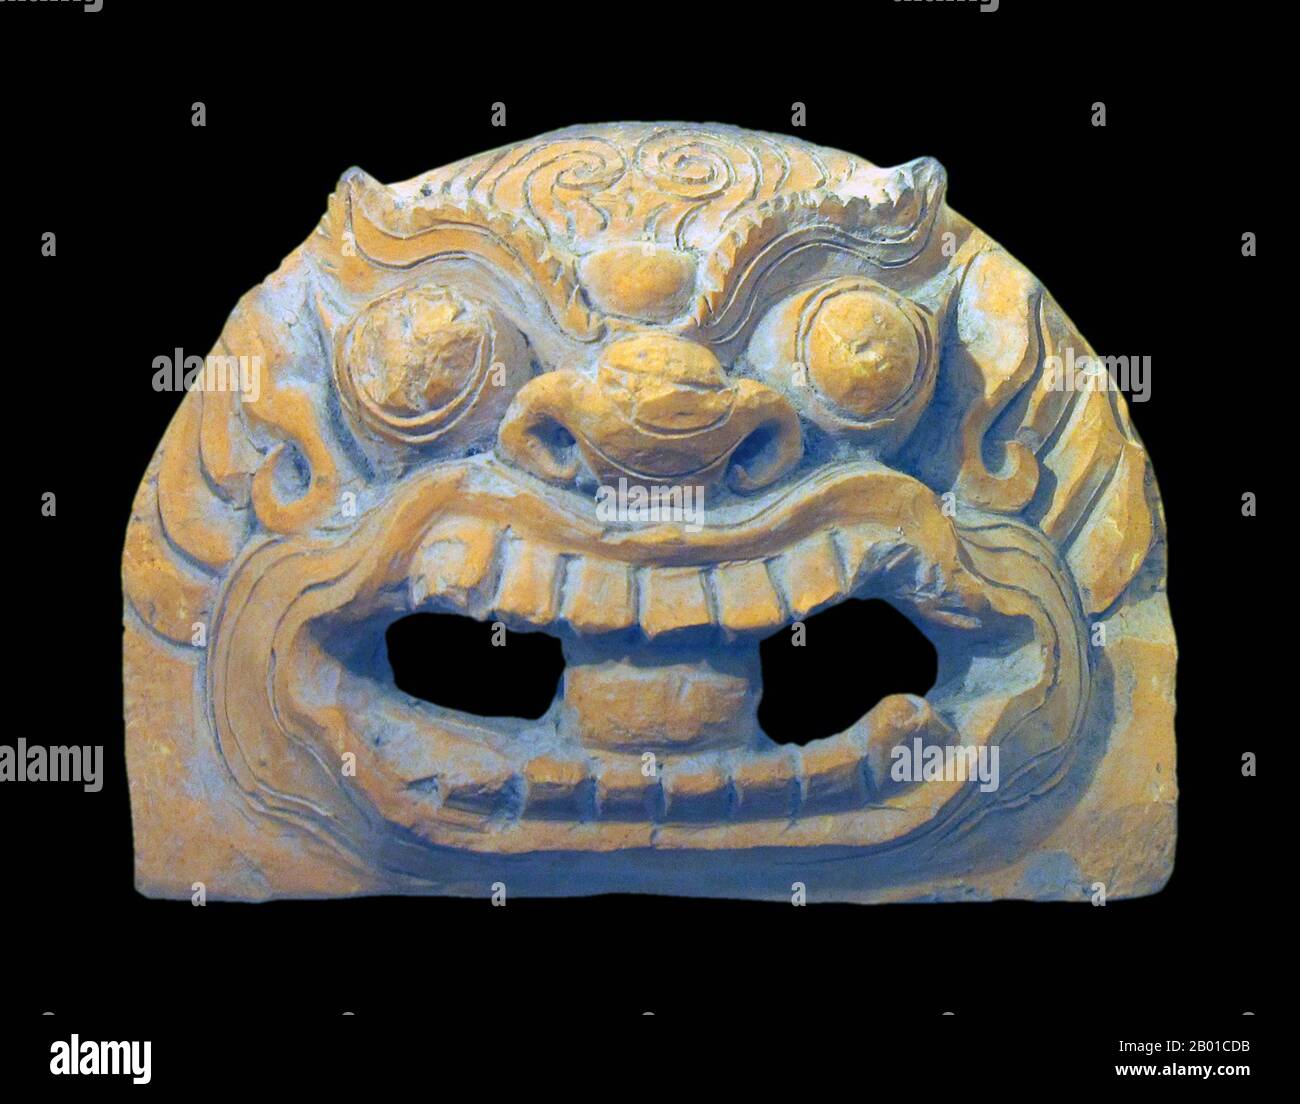 Vietnam: Ein Tiger-Kopf, Terrakotta, 13.-14. Jahrhundert u.Z. Nationalmuseum für vietnamesische Geschichte, Hanoi. Foto von Gryffindor - Jbarta (CC BY-SA 3,0 Lizenz). Stockfoto